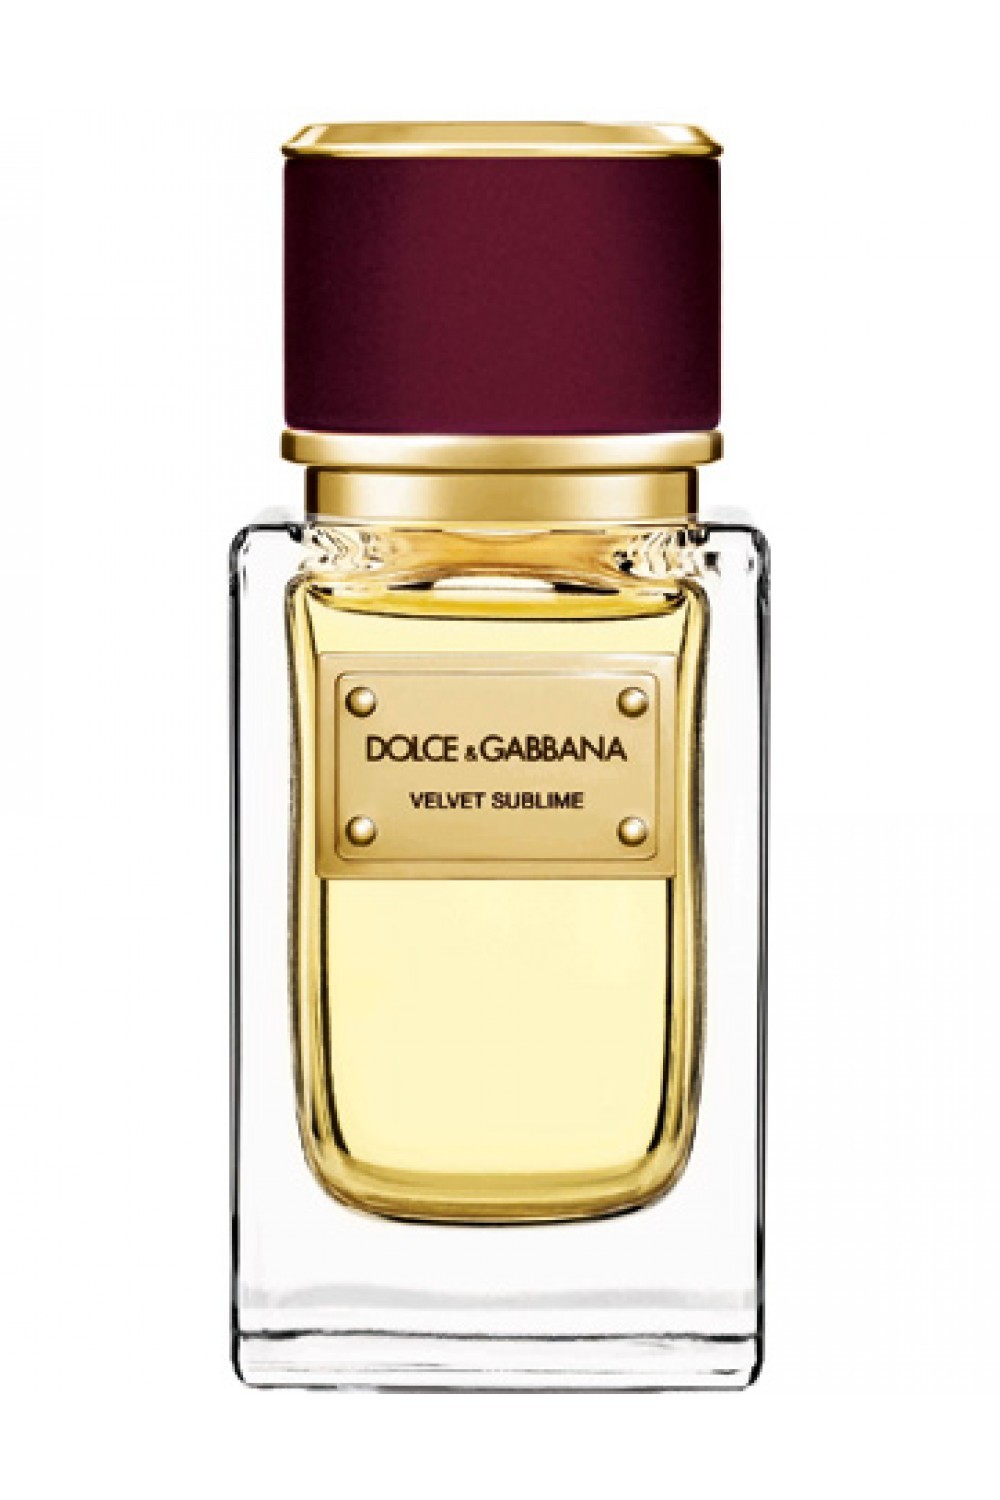 Dolce & Gabbana Velvet Sublime Pour Femme Eau de Parfum 50 ml Spray (senza scatola)